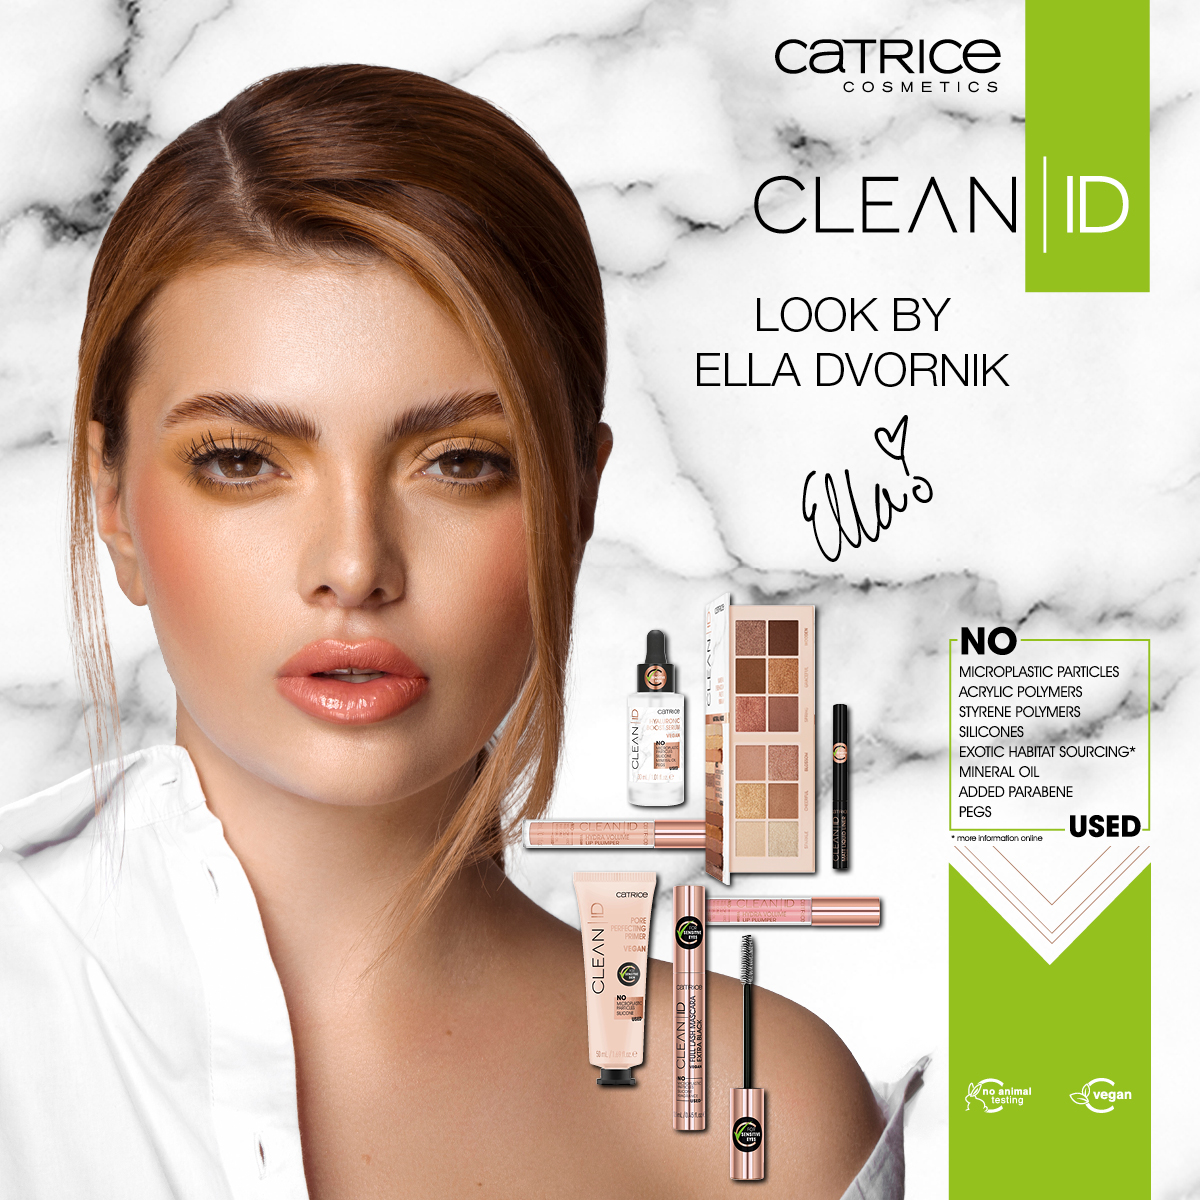 Catrice kozmetika nudi limitiranu kolekciju Clean ID, čije zaštitno lice je poznata influencerica Ella Dvornik